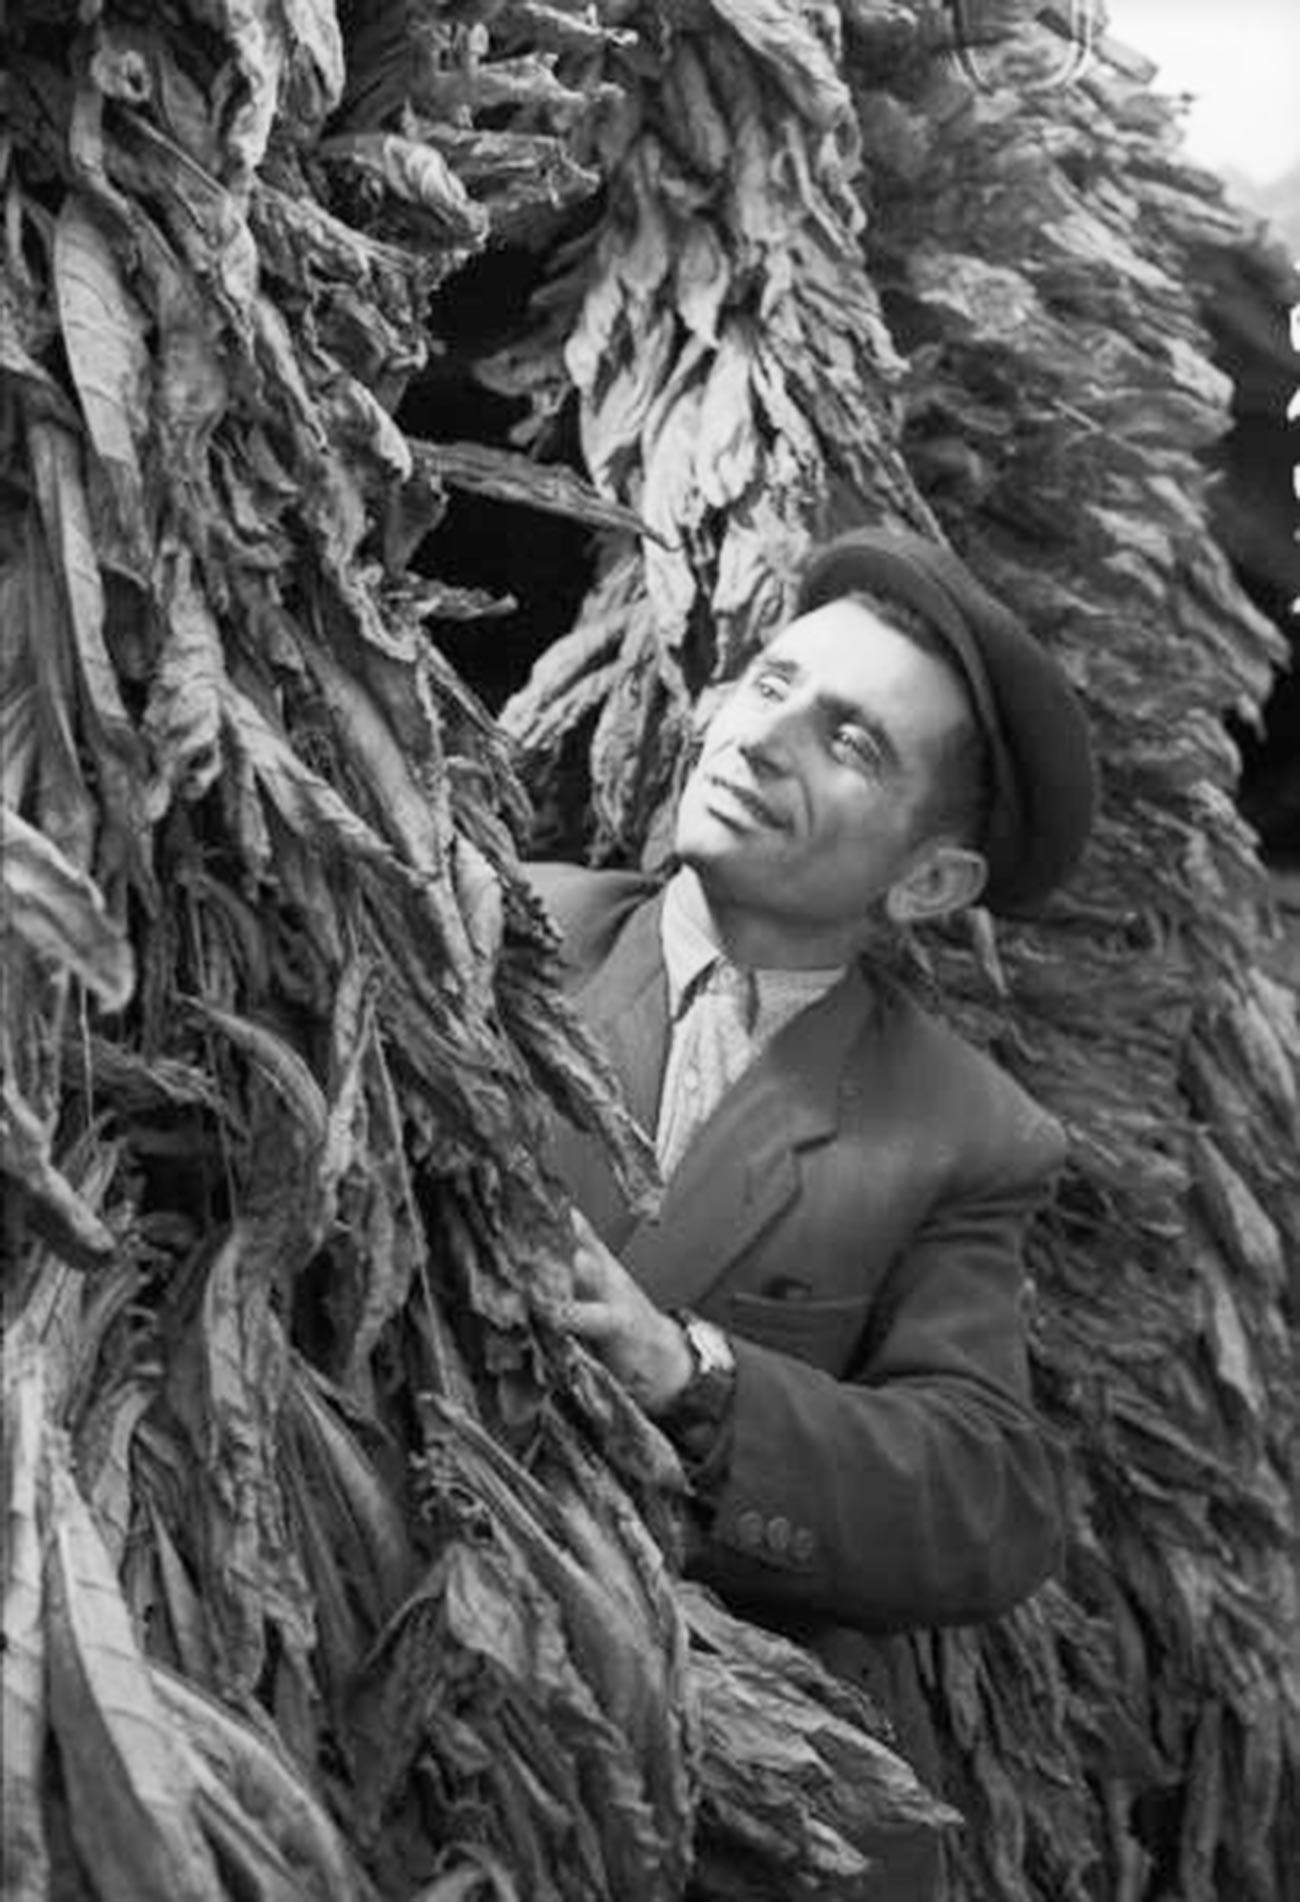 Un Arménien inspectant des feuilles de tabac au début des années 60

